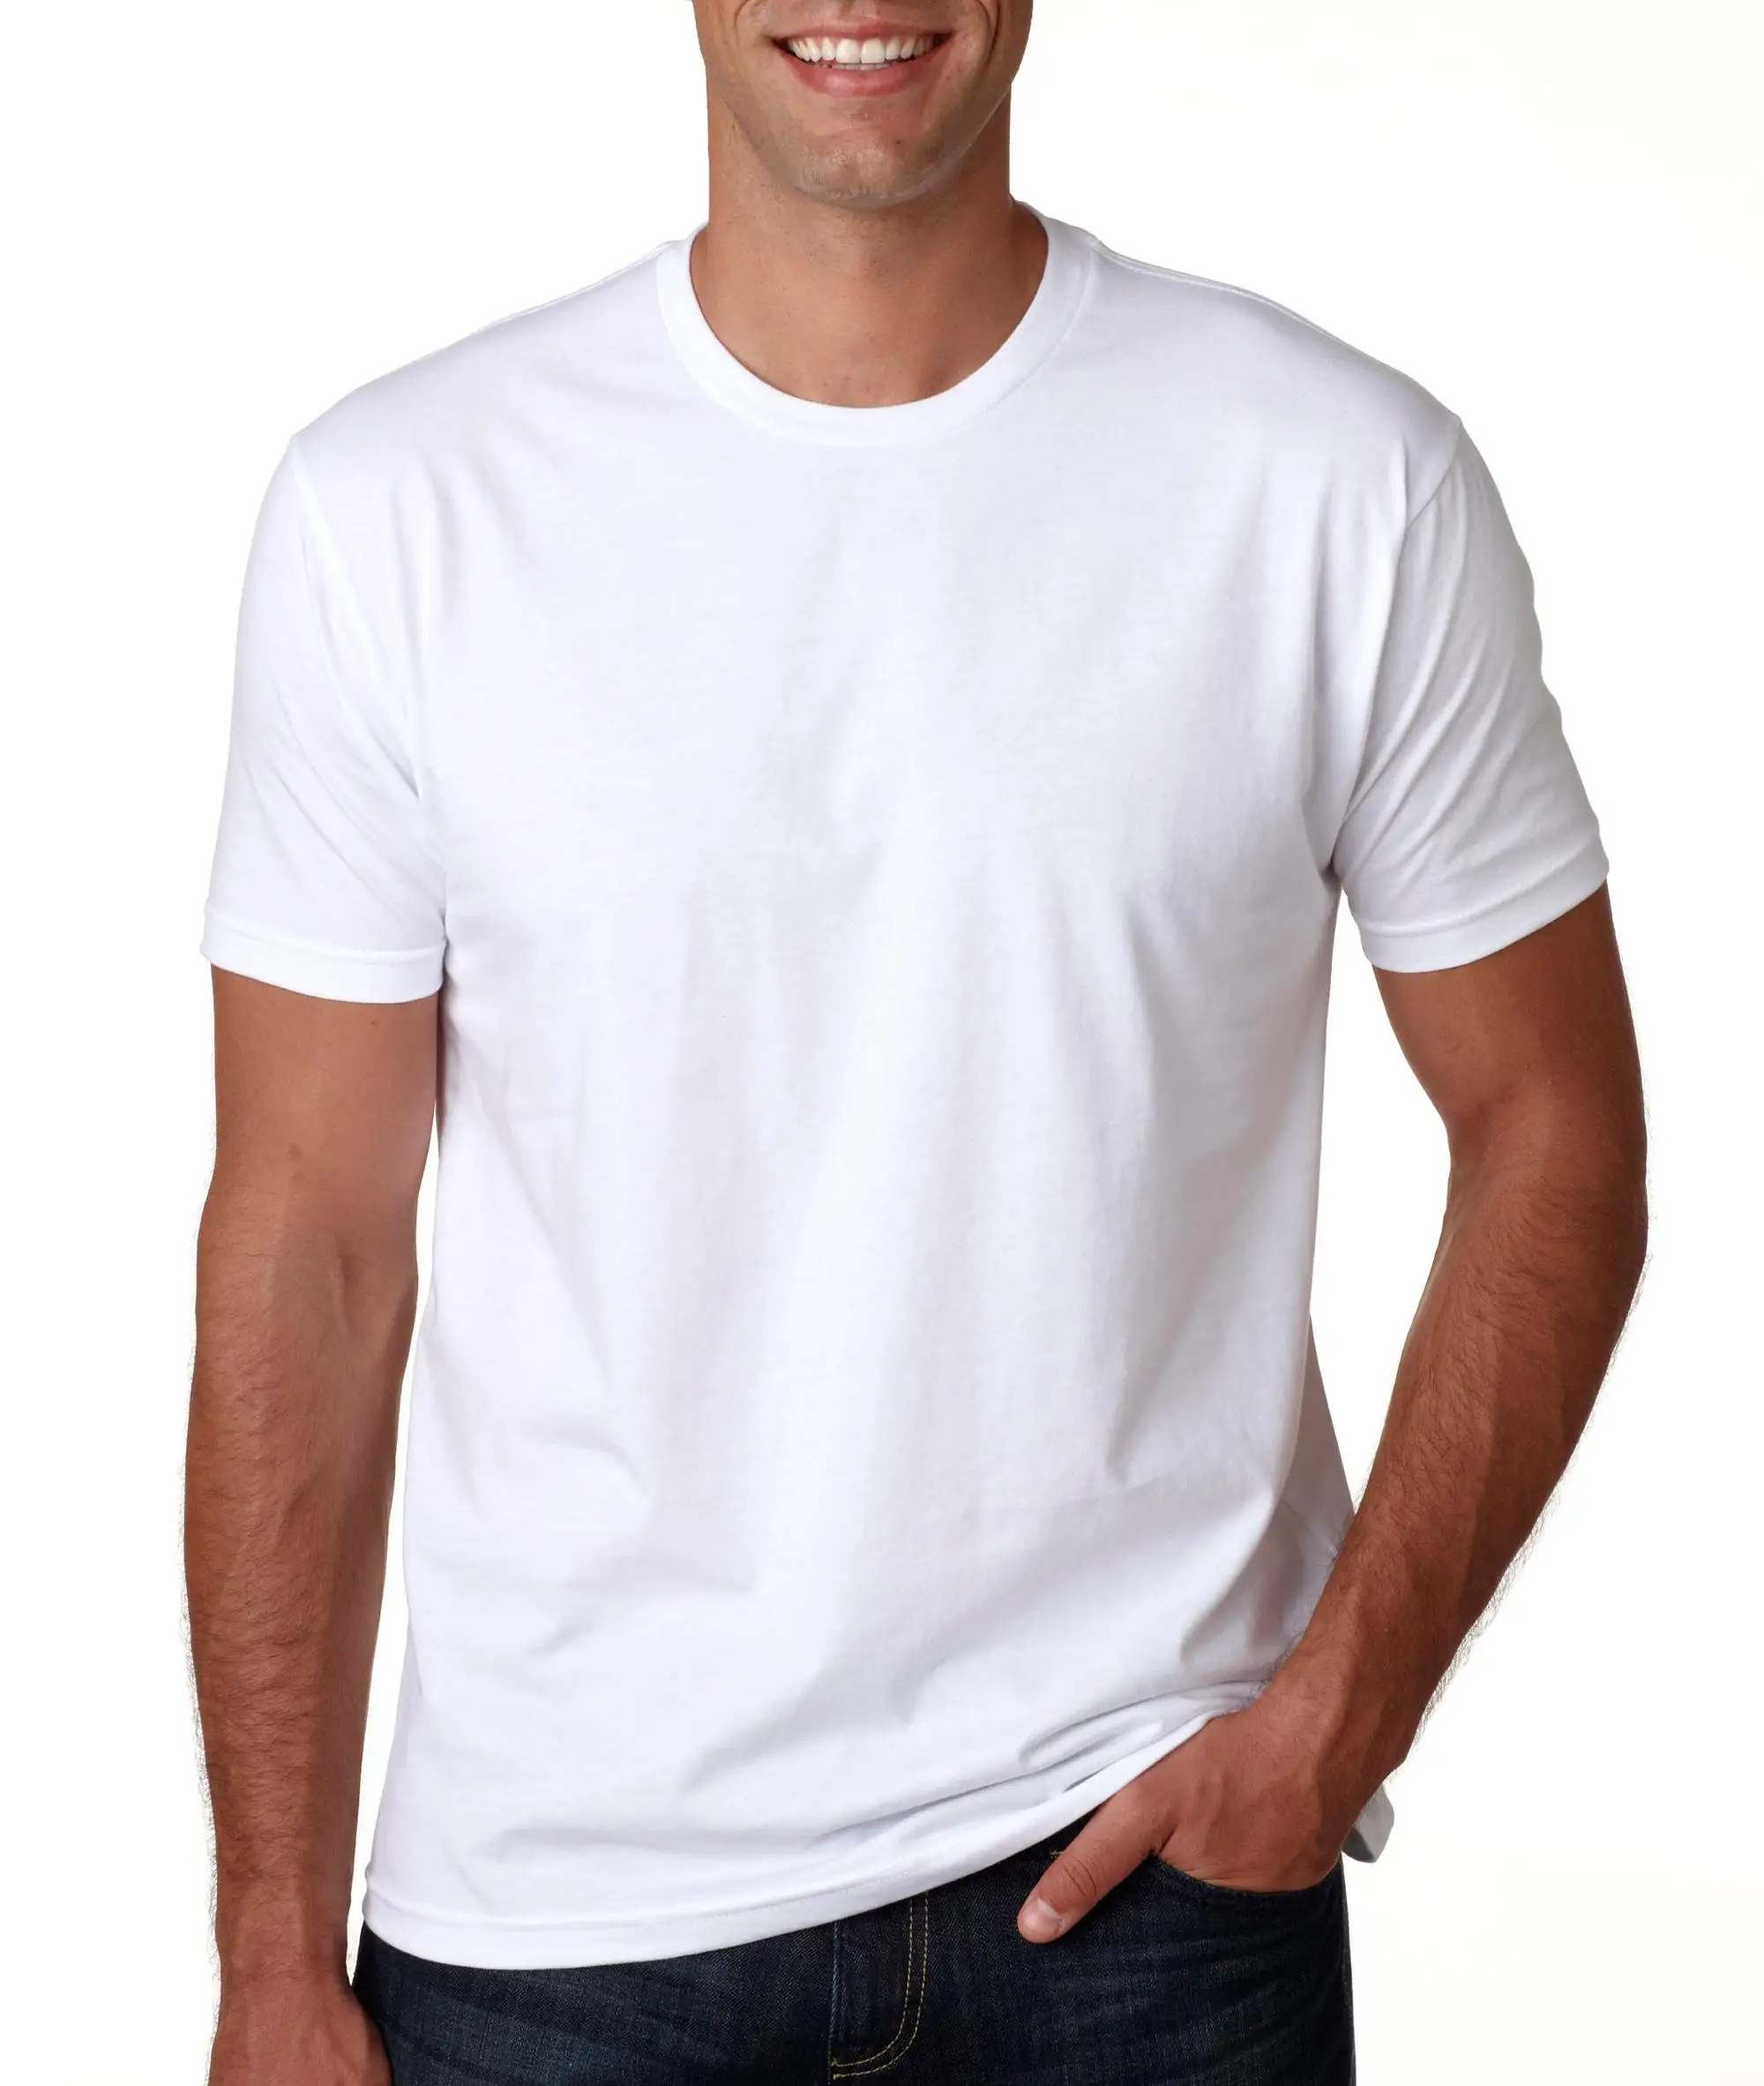 Cuello Redondo Casual Para Hombre Camiseta Blanca Lisa - Buy Barato Llanura  Blanca Camisetas,A Granel Blanco Camisetas,Delgado Blanco Camisetas Product  on Alibaba.com